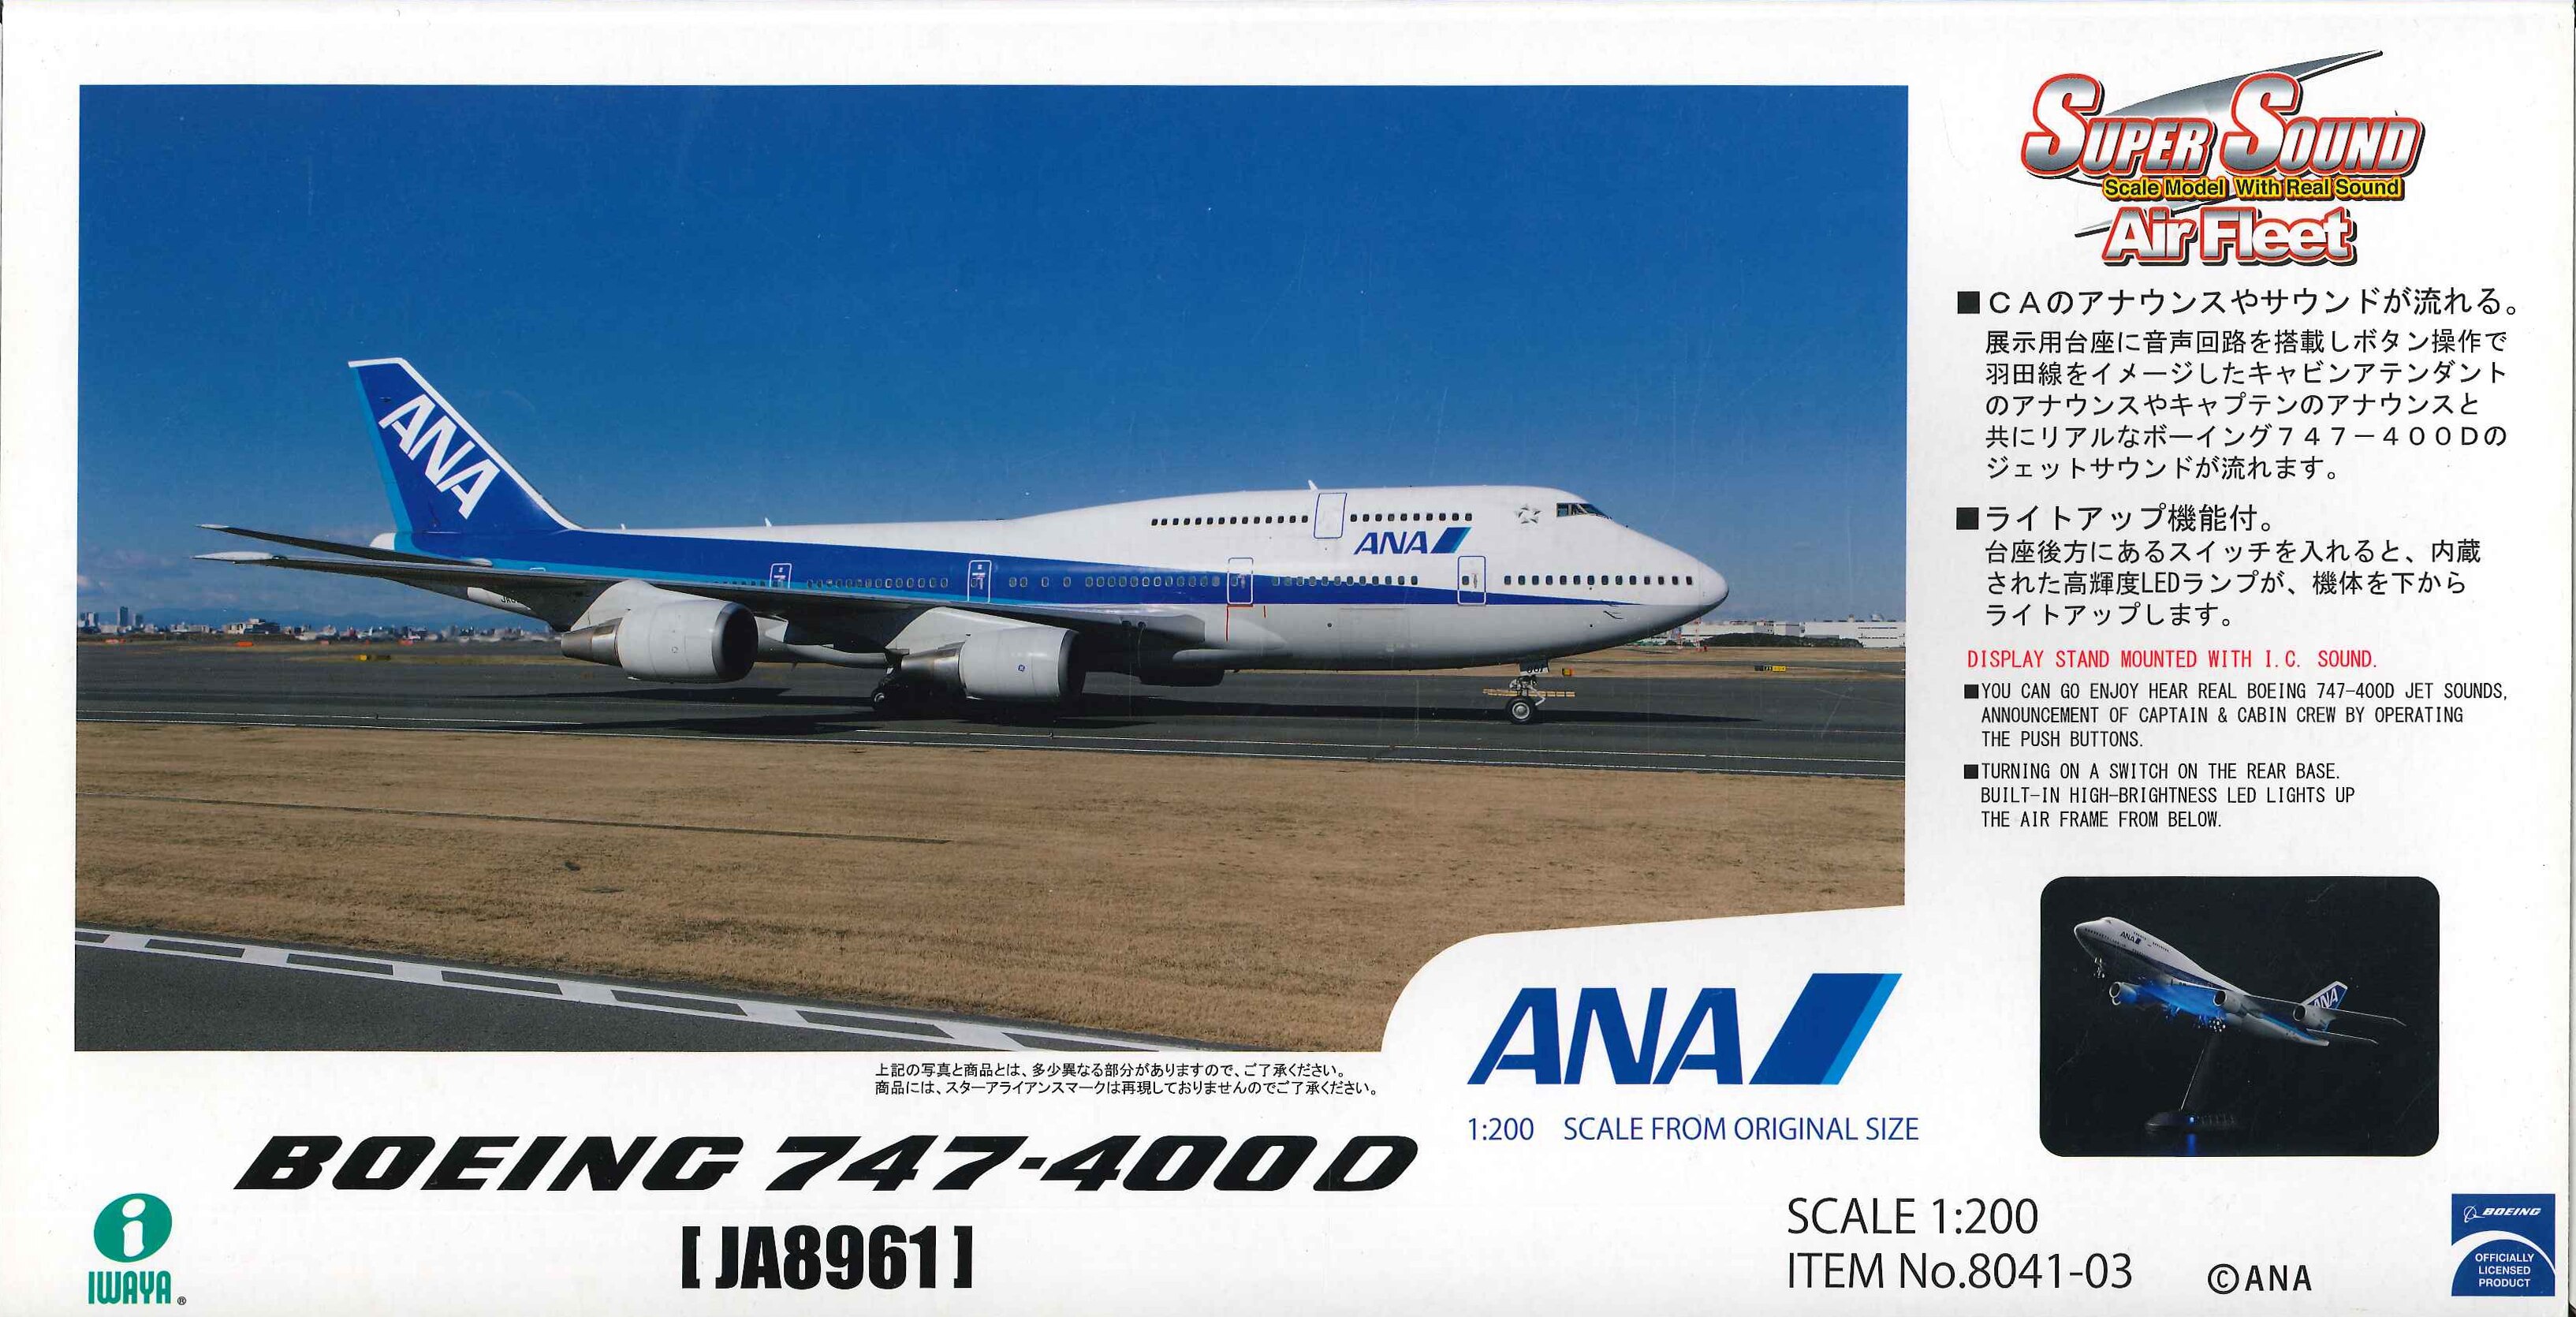 ANAボーイング 747-400 1/200 スーパーサウンドエアフリート - その他